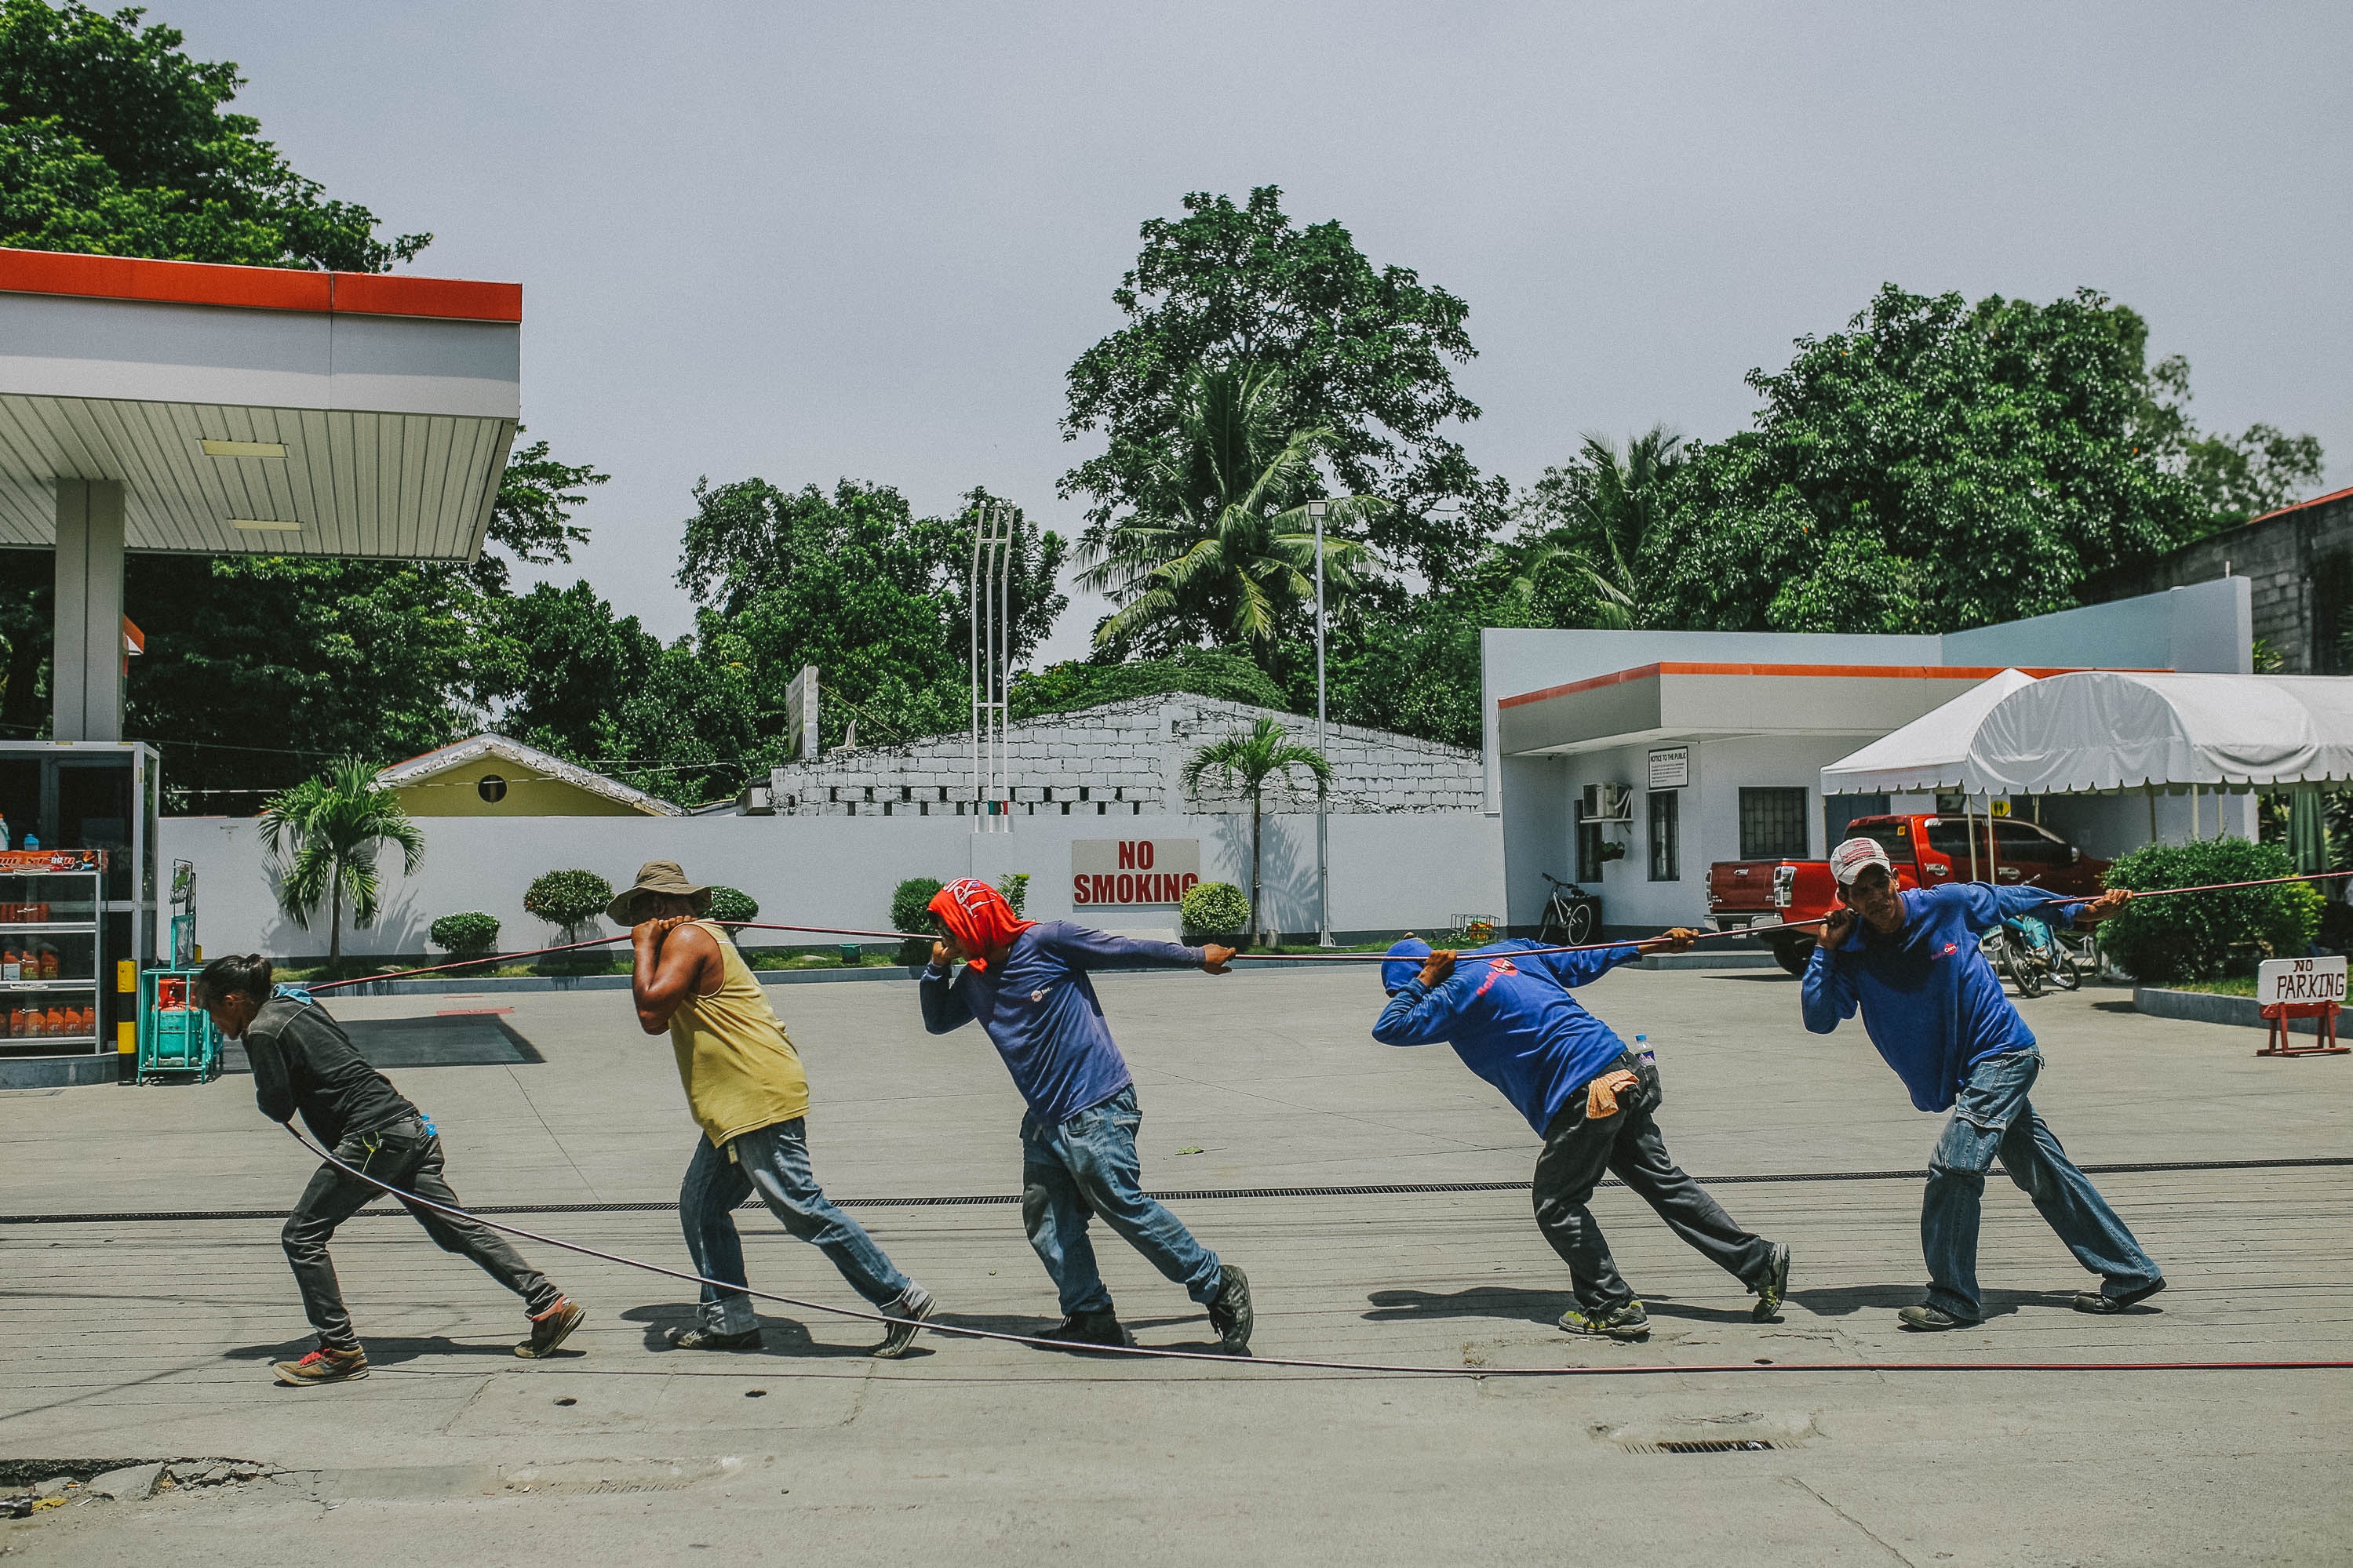 Treballadors en una benzinera, estirant una corda. Font: Pexels - Denniz Futalan